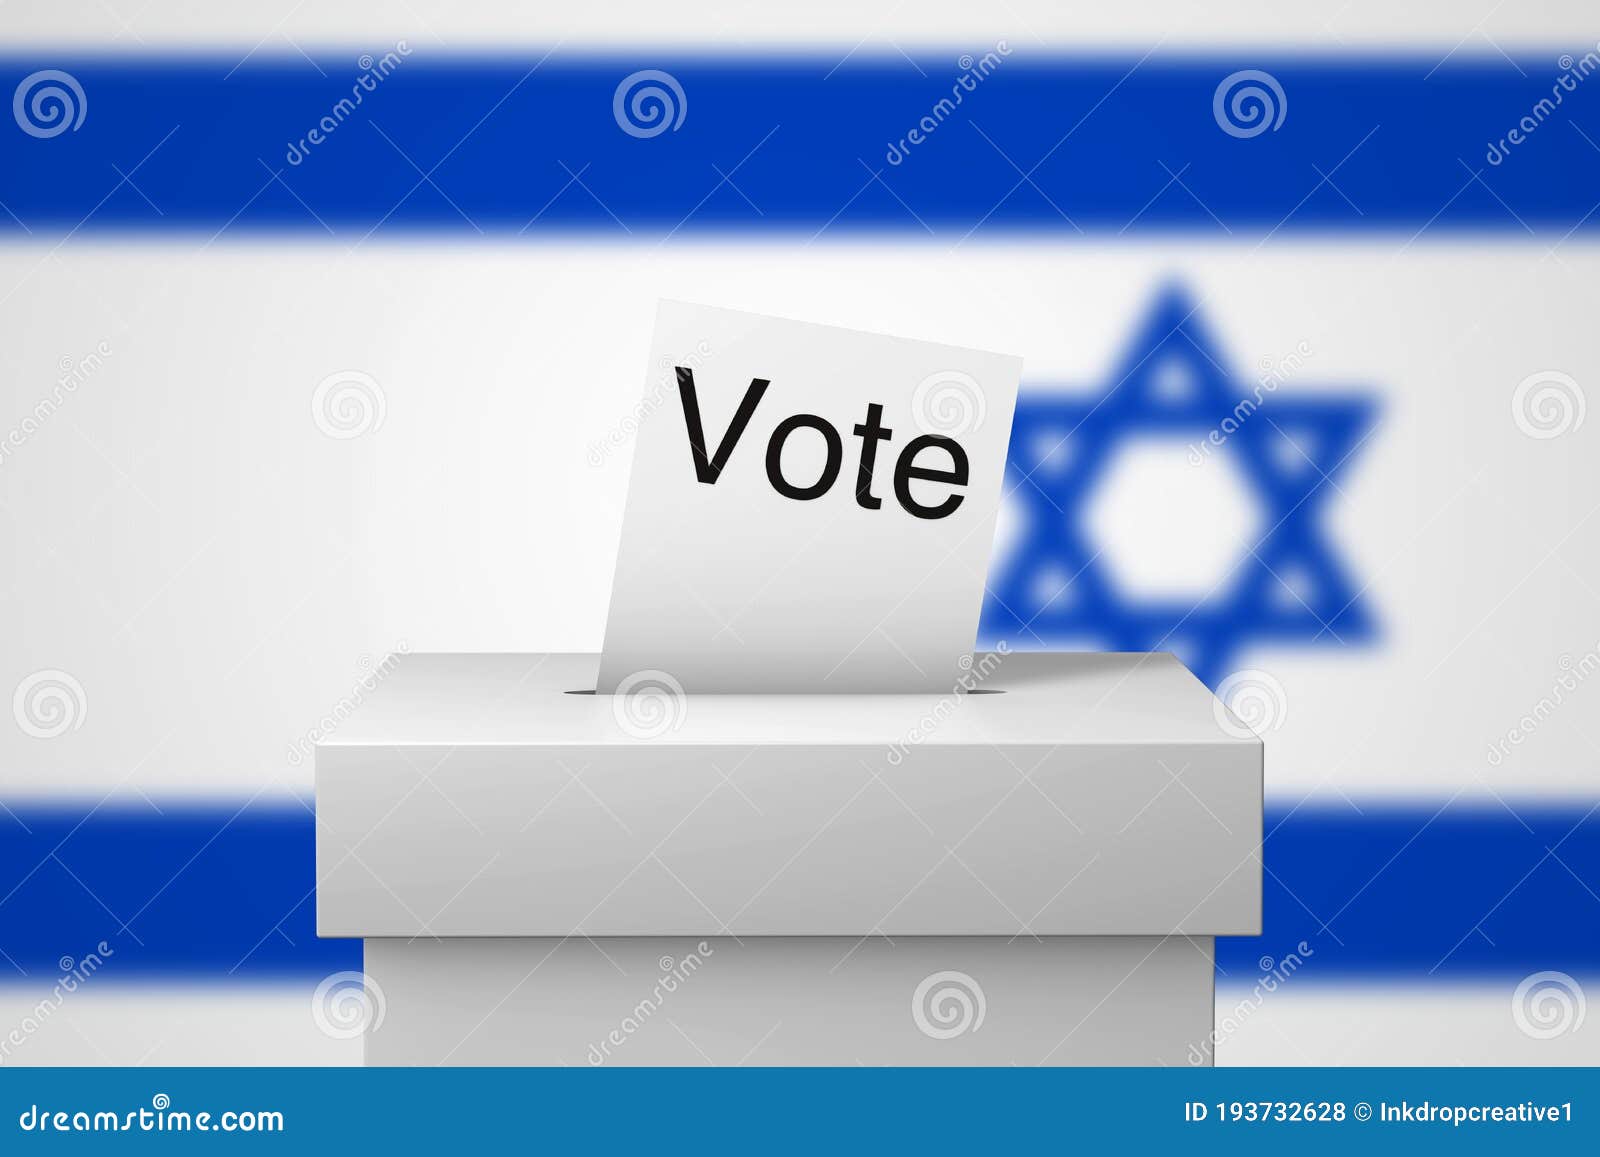 甘茨未能成功组阁 以色列或将迎来一年内第三次大选_手机新浪网